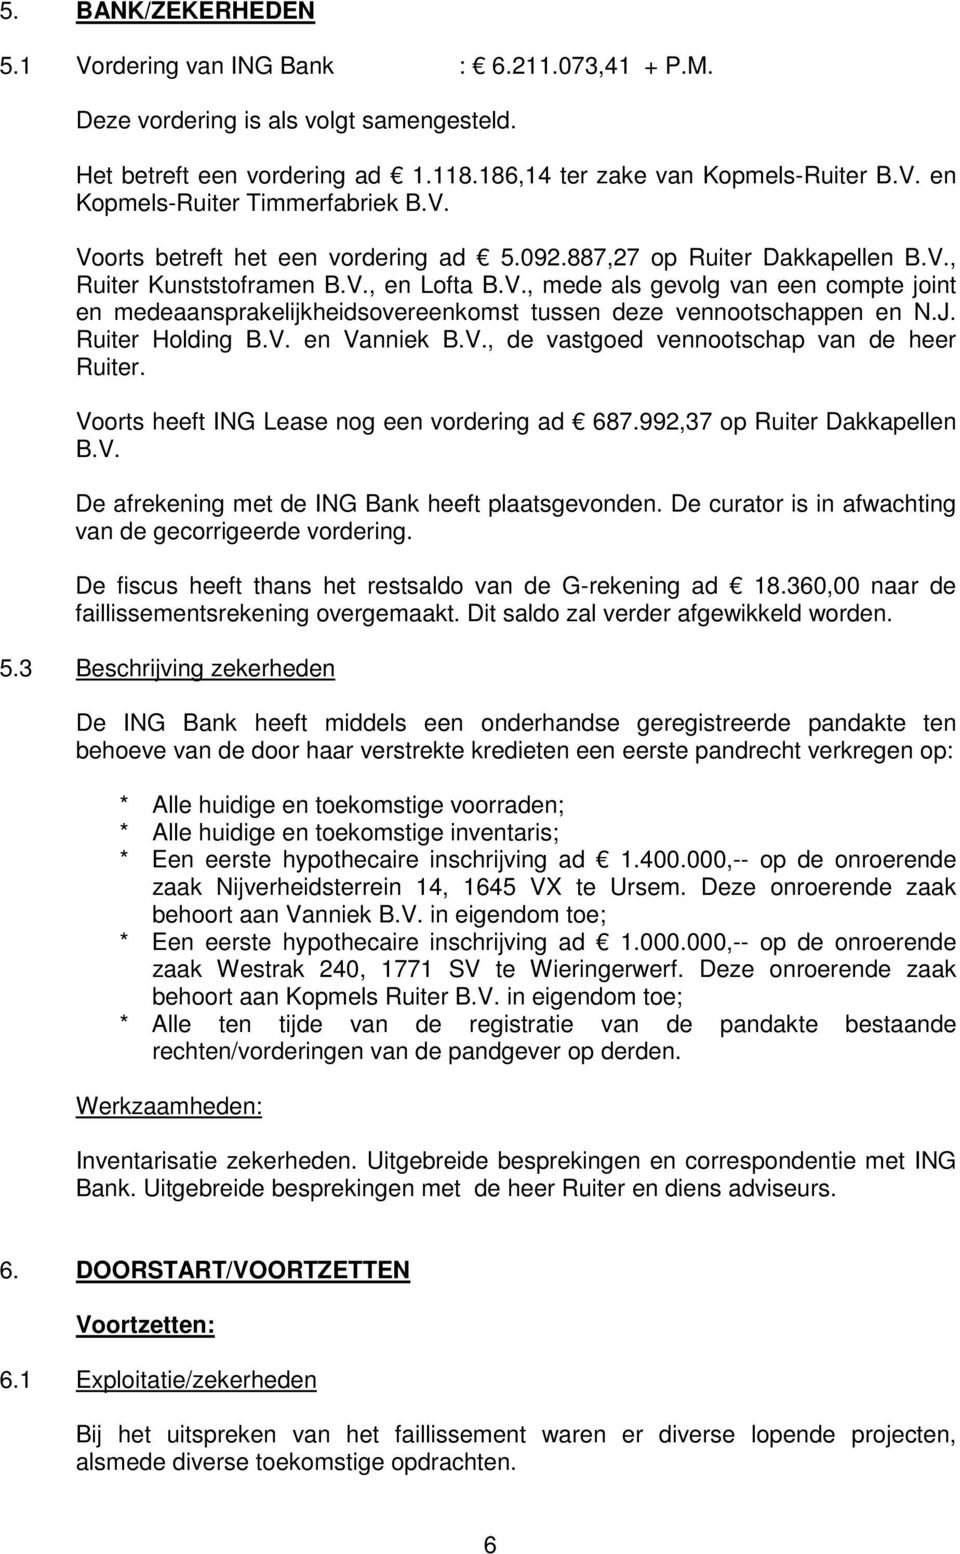 J. Ruiter Holding B.V. en Vanniek B.V., de vastgoed vennootschap van de heer Ruiter. Voorts heeft ING Lease nog een vordering ad 687.992,37 op Ruiter Dakkapellen B.V. De afrekening met de ING Bank heeft plaatsgevonden.